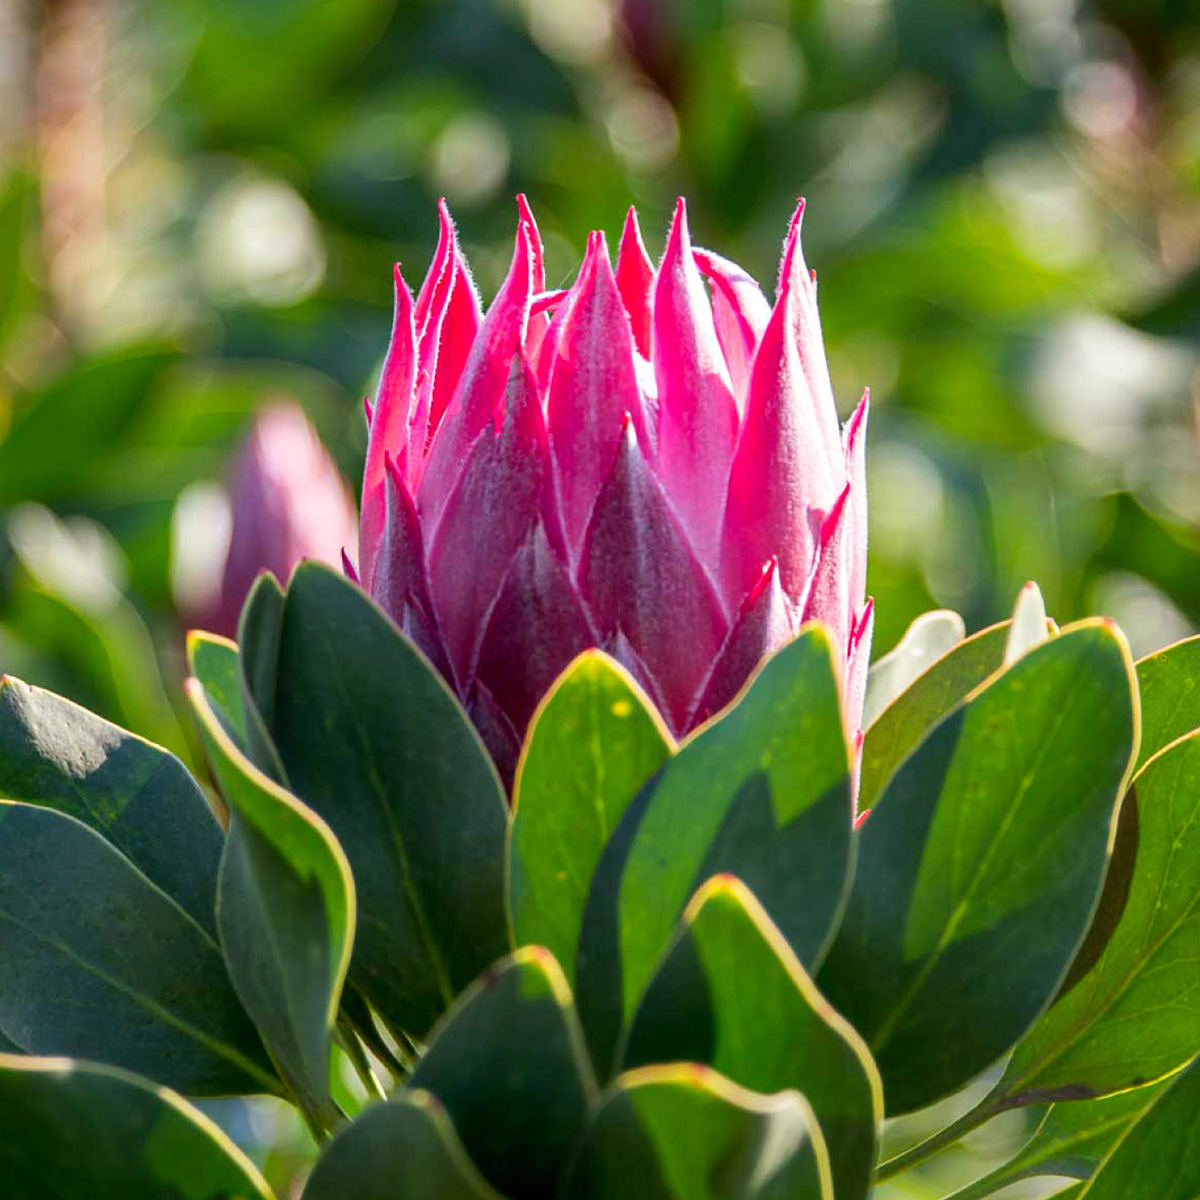 Zuluflora Protea Madiba - on Thursd